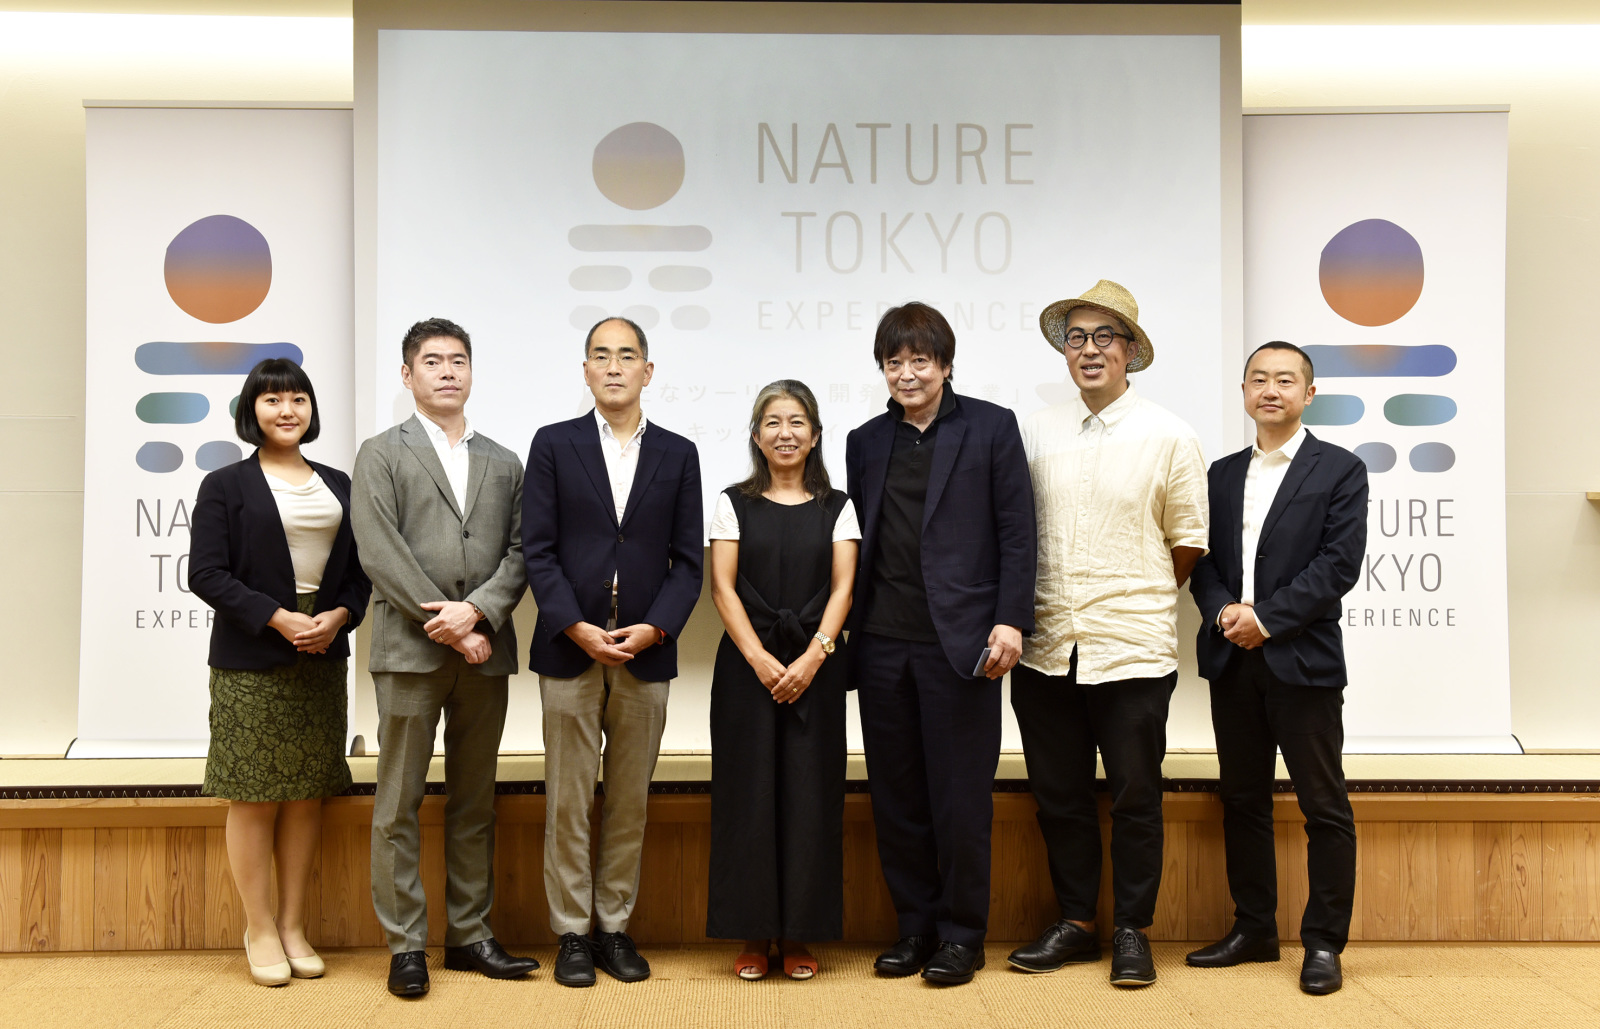 『Nature Tokyo Experienceキックオフミーティング』で登壇されたみなさん。